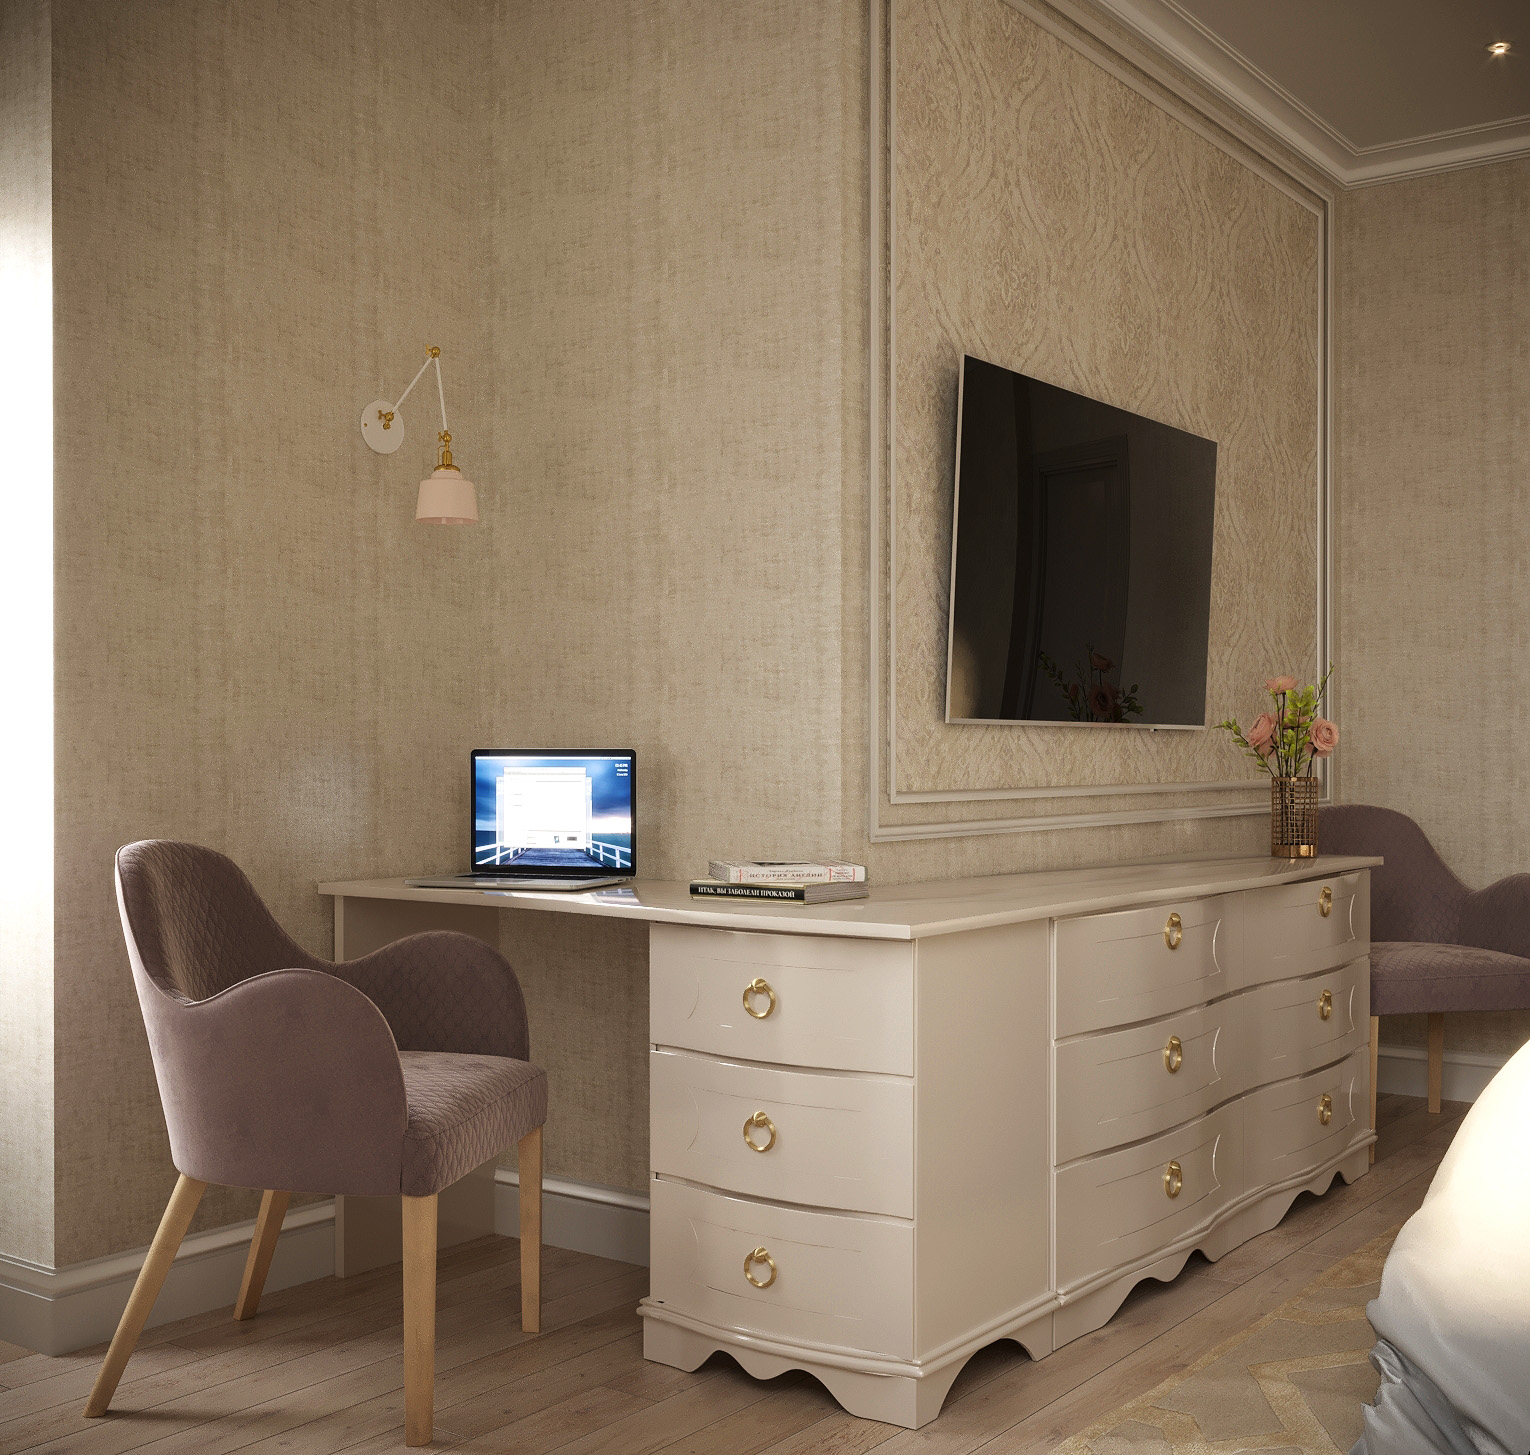 क्लासिक शैली का बेडरूम 3d max corona render में प्रस्तुत छवि